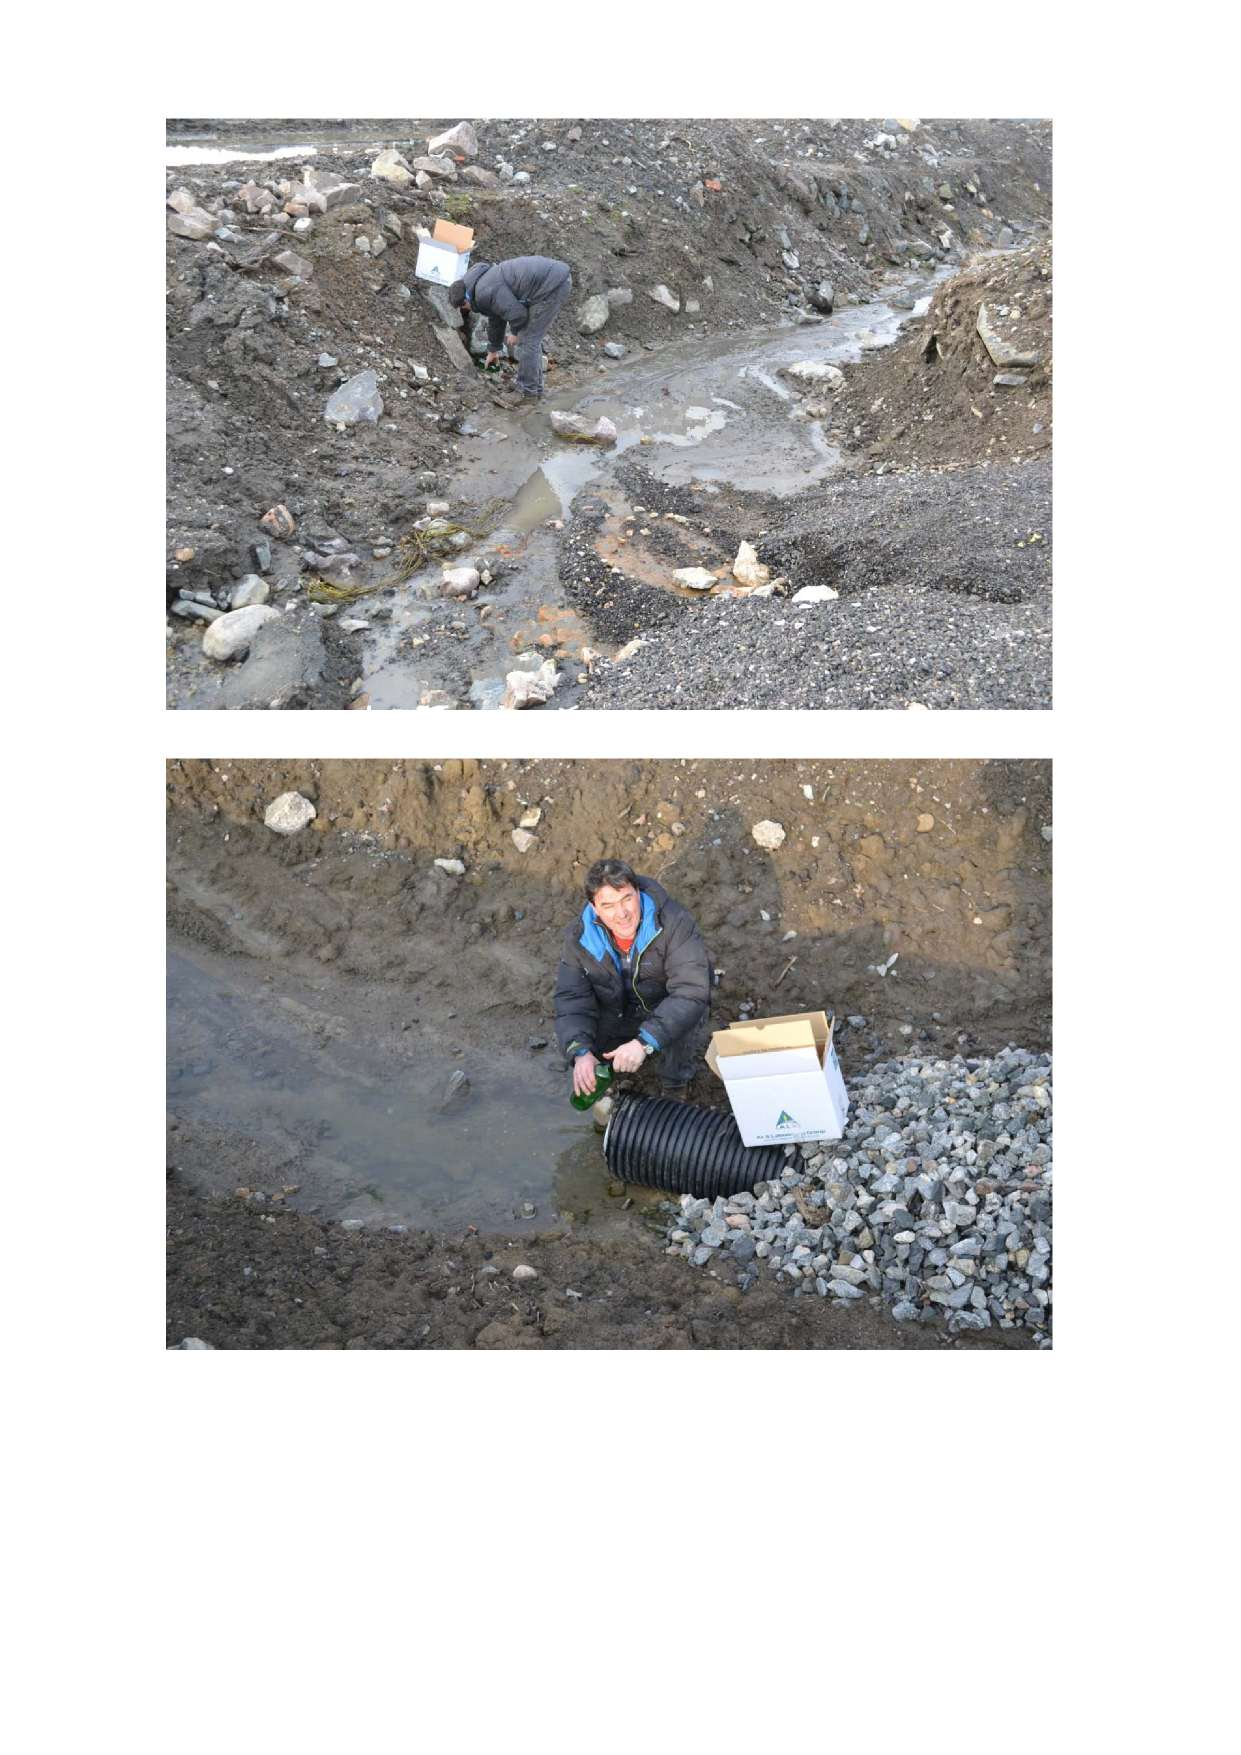 Bilde 5. Uttak av vannprøve av drensvann fra området Bilde 6.